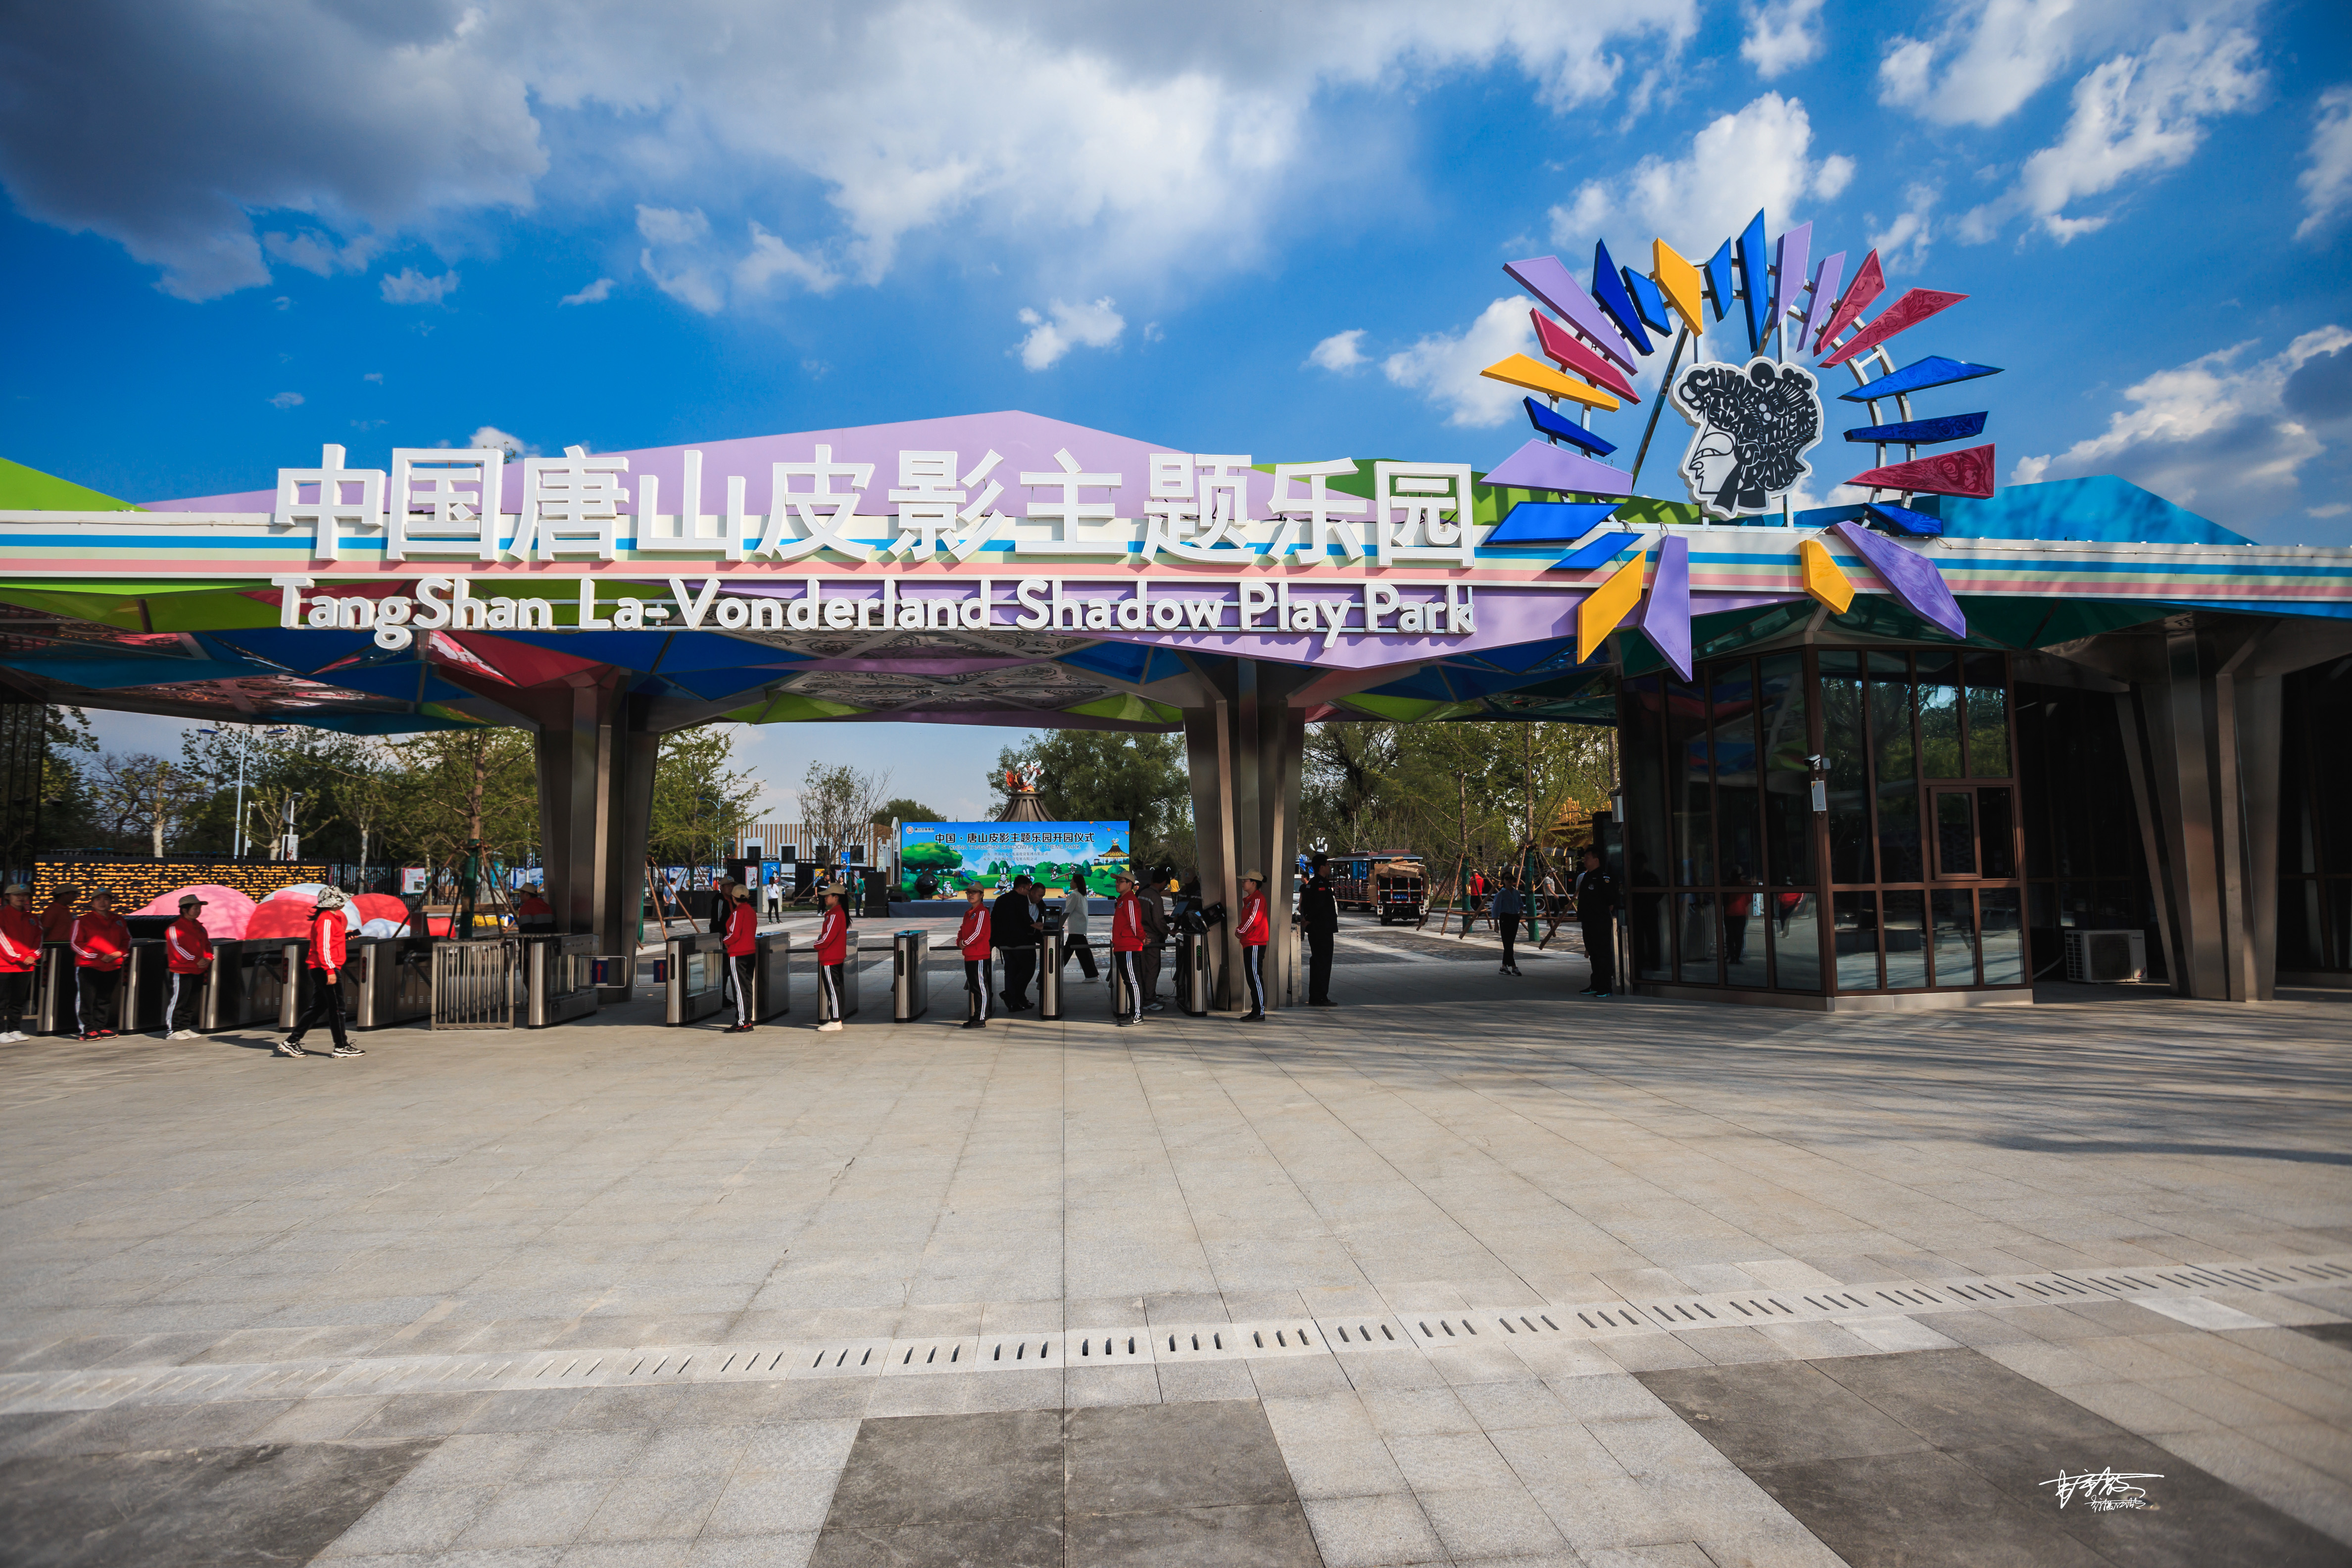 中国61唐山皮影主题乐园是全国首个以非物质文化遗产——皮影为主题